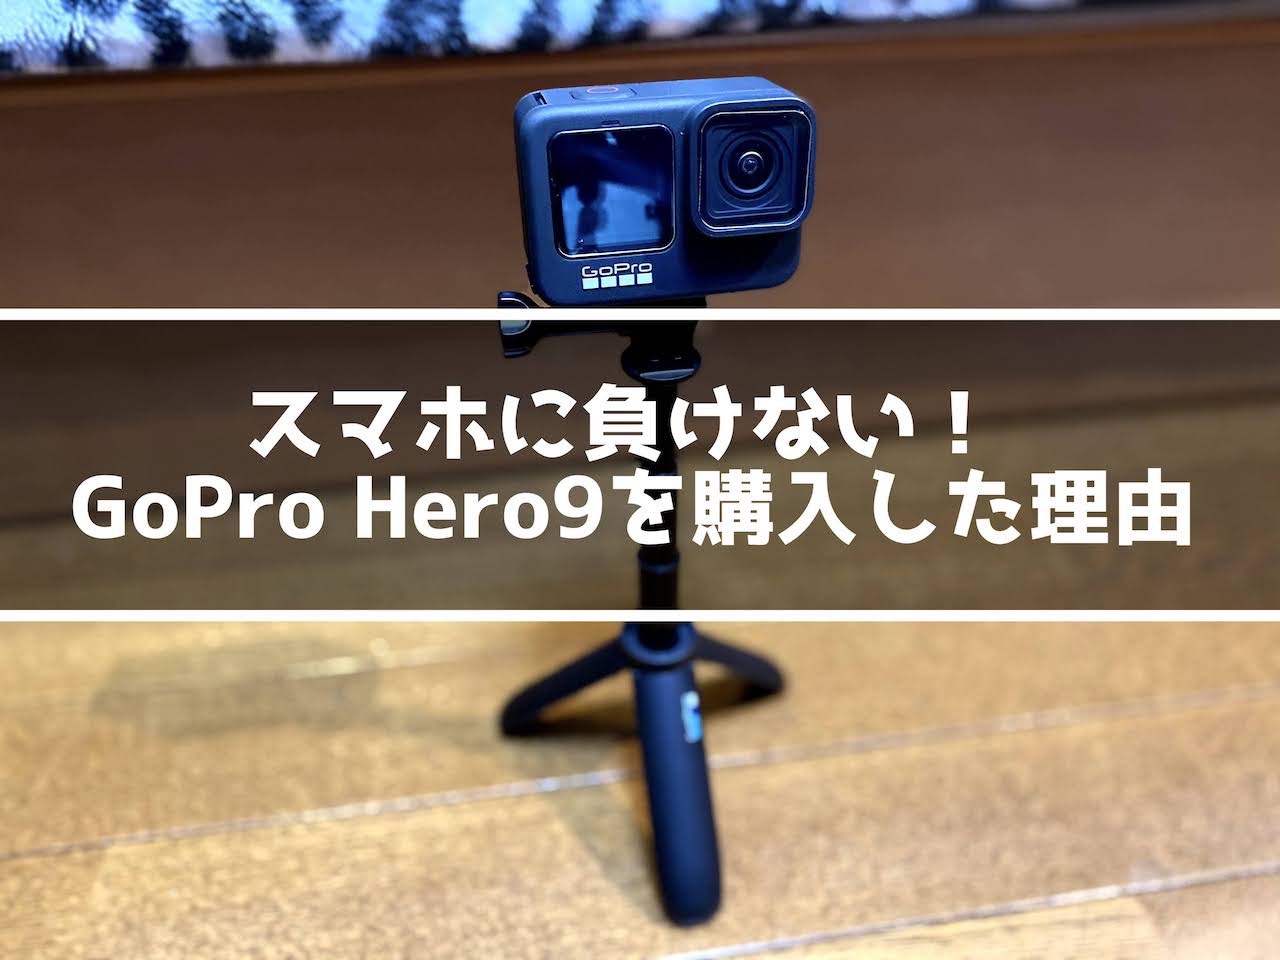 GoPro Hero9を購入した理由